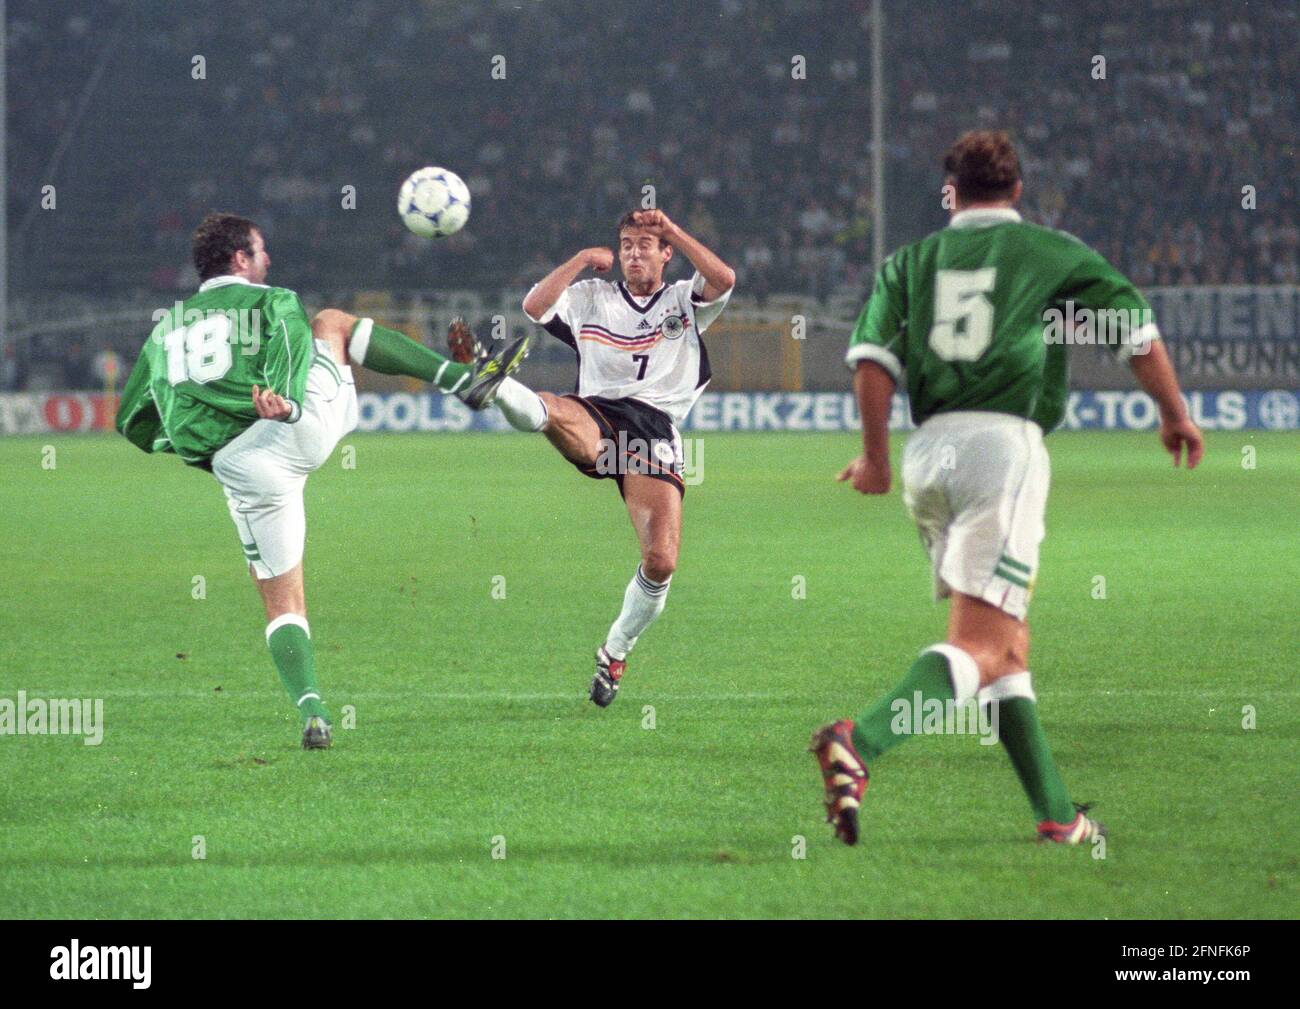 Campionato europeo di qualificazione : Germania - Irlanda del Nord 4:0/08.09.1999 a Dortmund. Mehmet Scholl (Deut./center) in duello con James Quin (18). Re: Mark Williams (5/entrambi Irlanda del Nord). [traduzione automatizzata] Foto Stock